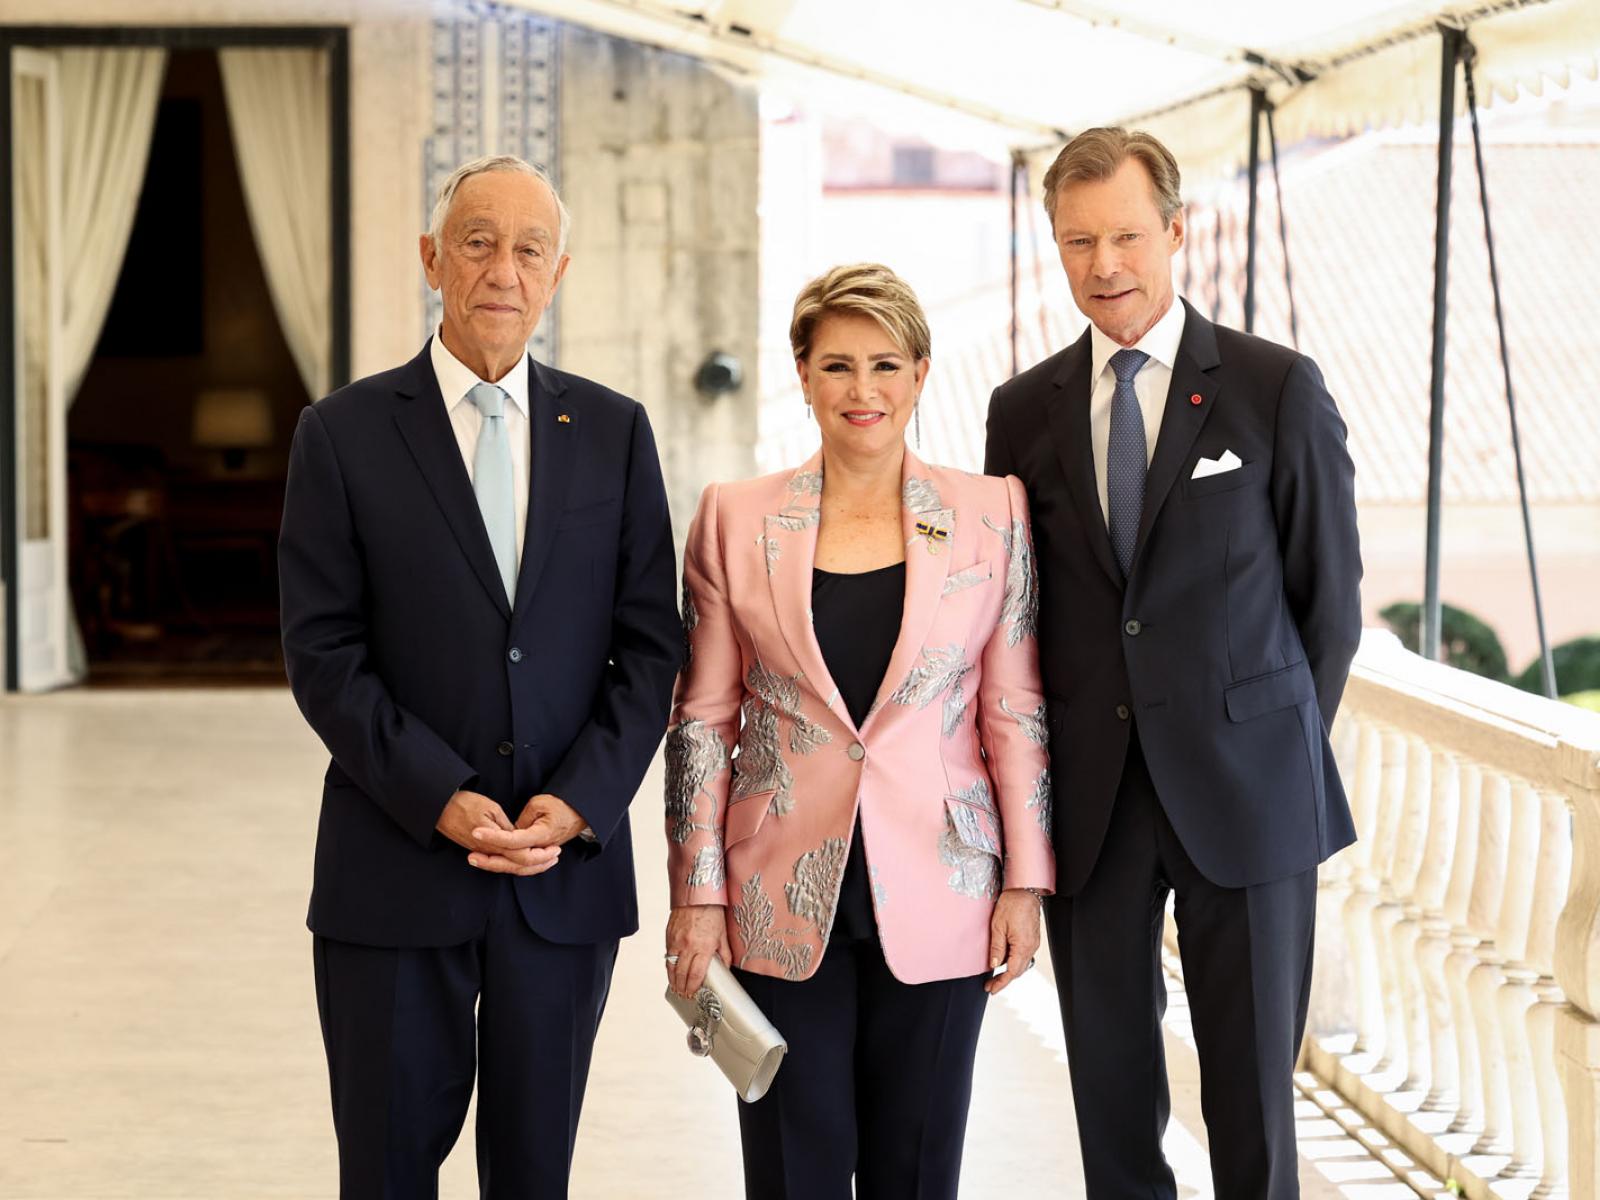 Le Couple grand-ducal et le président portugais au Palais de Belém